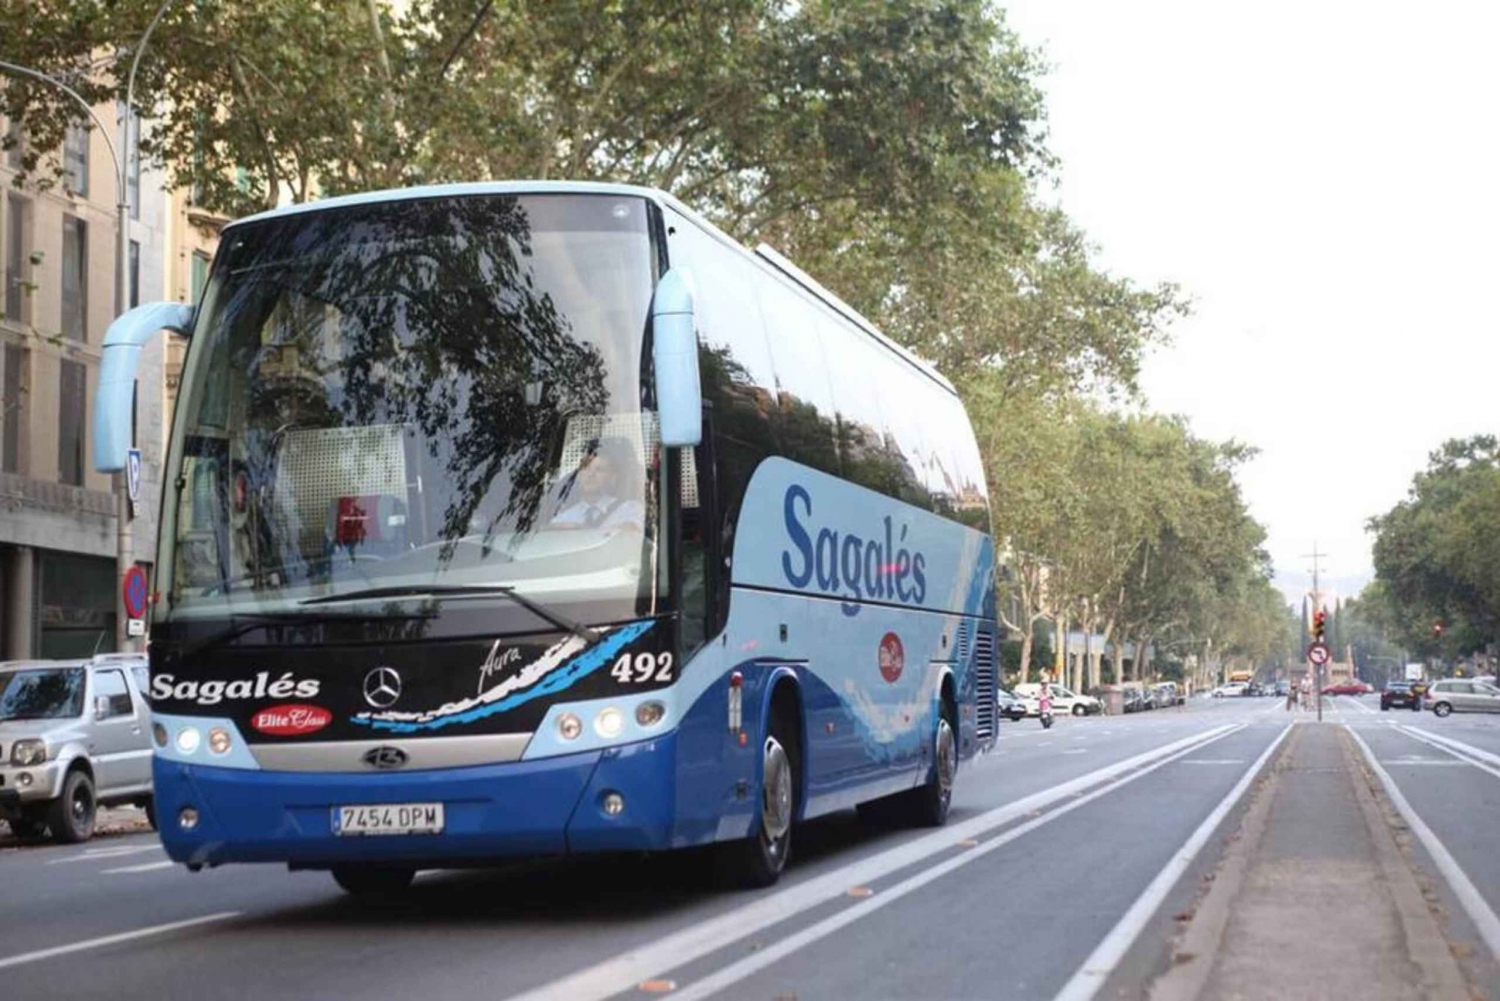 Girona: Transfer autobusem z lotniska w Gironie do centrum Barcelony